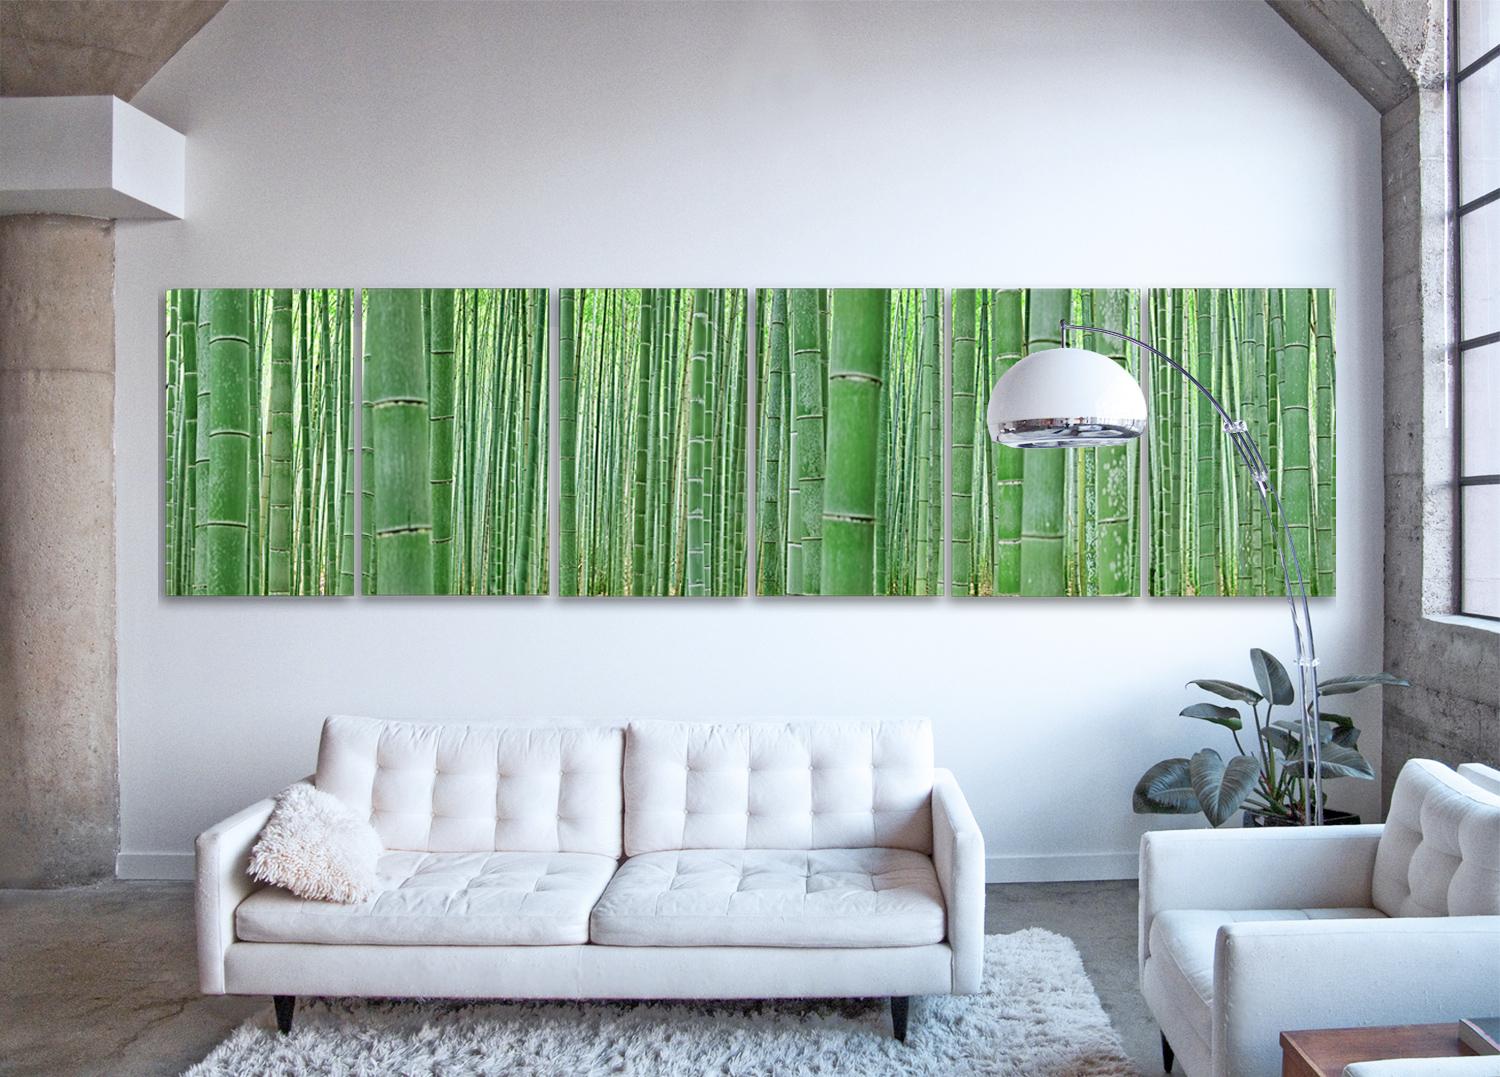 des sections photographiques à grande échelle d'un biotope naturel luxuriant de couleur vert émeraude, une observation très détaillée de la beauté naturelle de la célèbre bambouseraie d'Arashiyama au Japon

Forêt de bambous par Erik Pawassar  

42 x